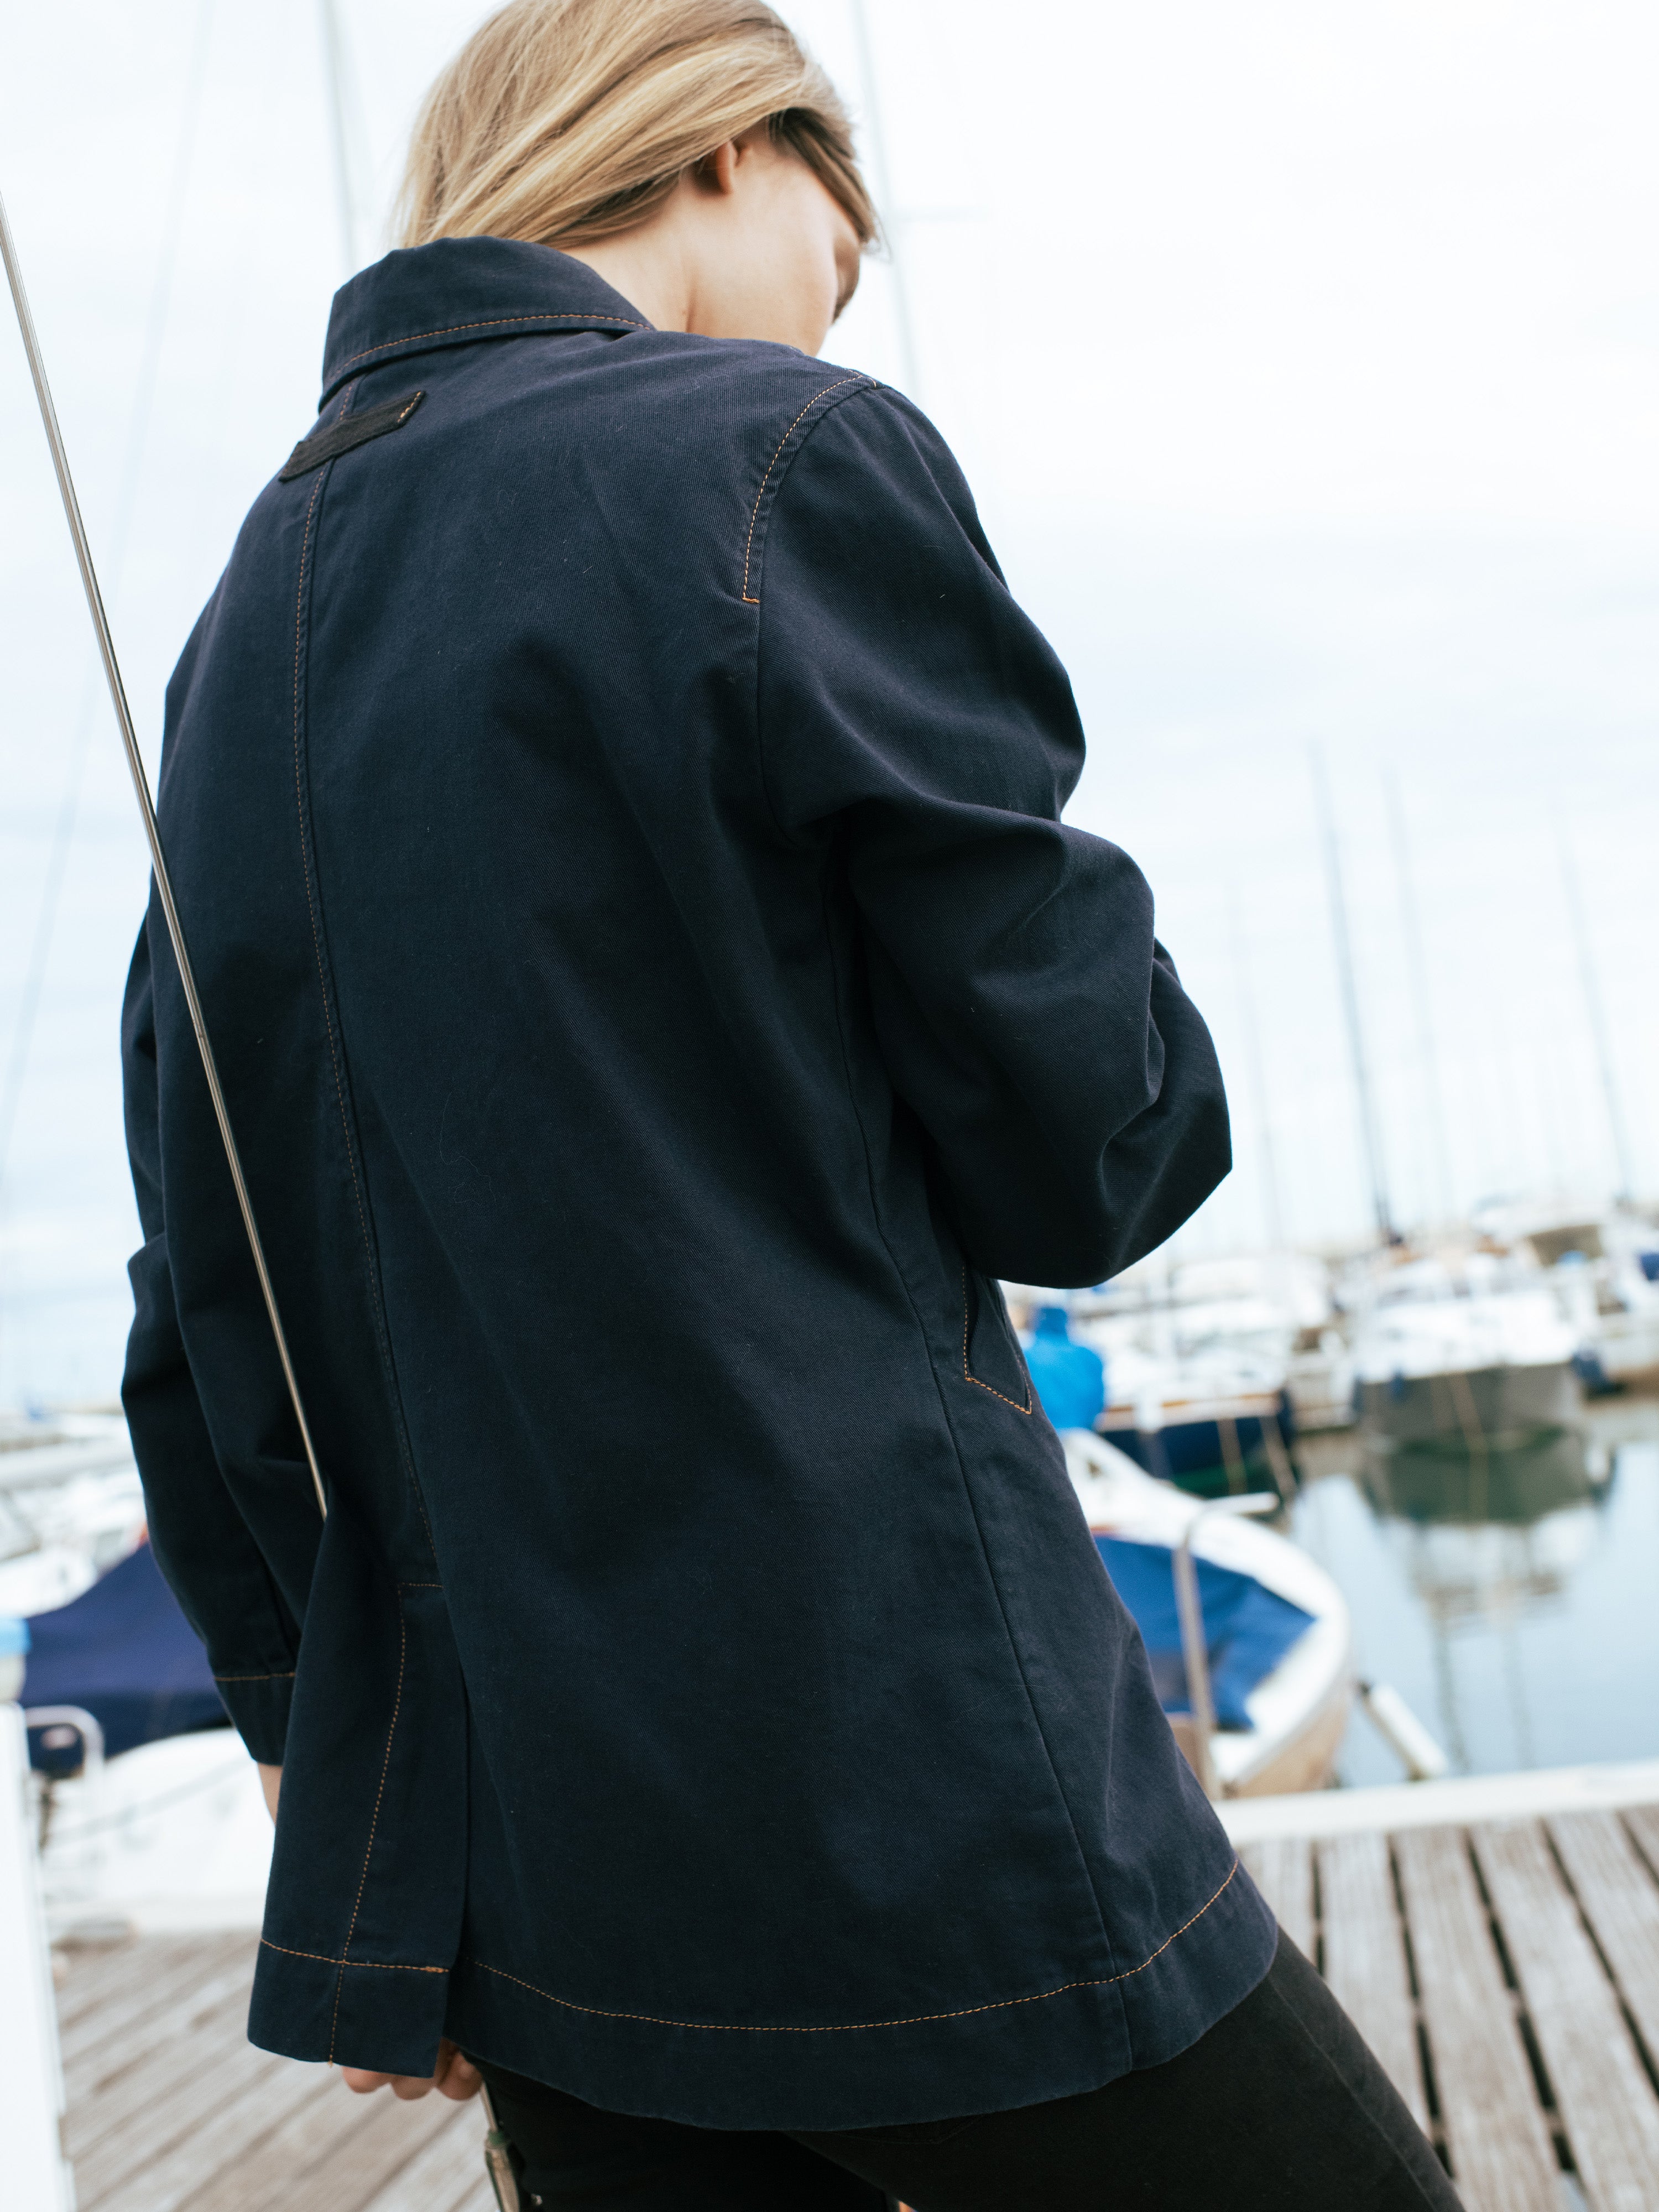 Nautical jacket